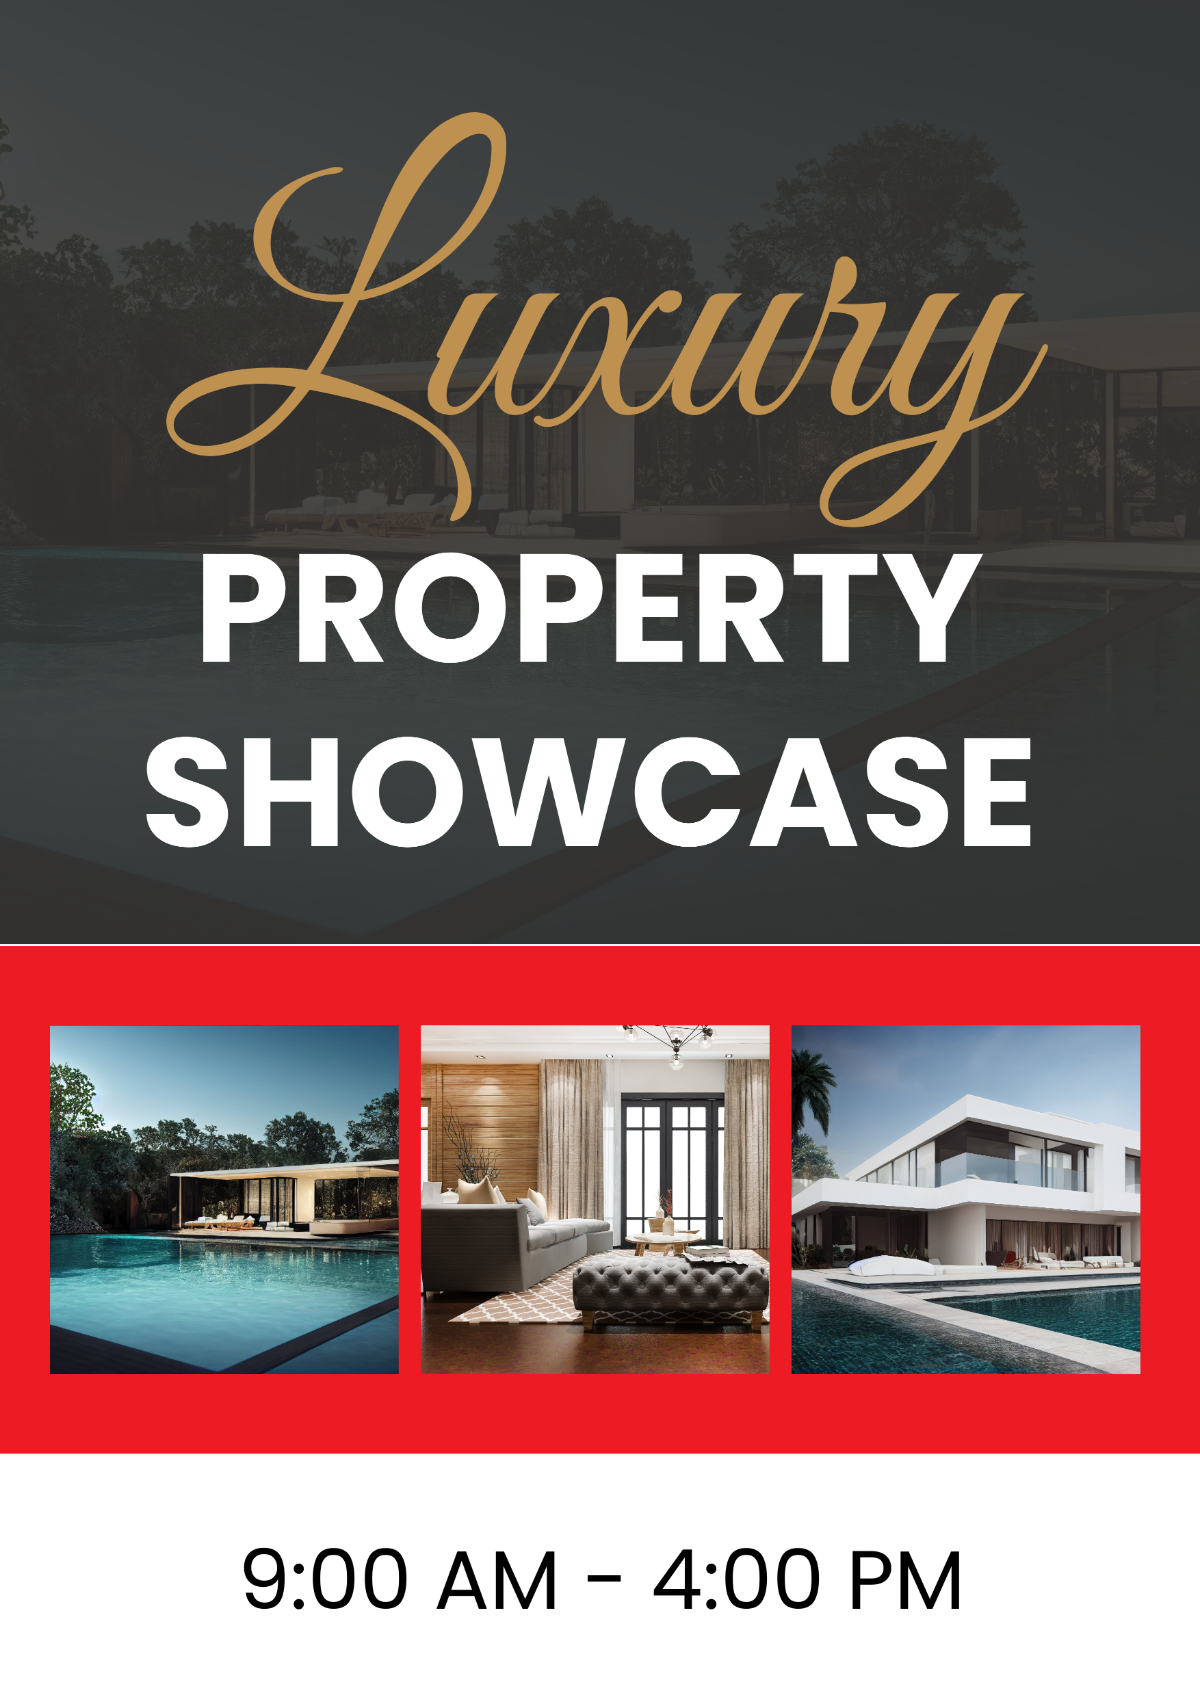 Free Luxury Property Showcase Signage Template